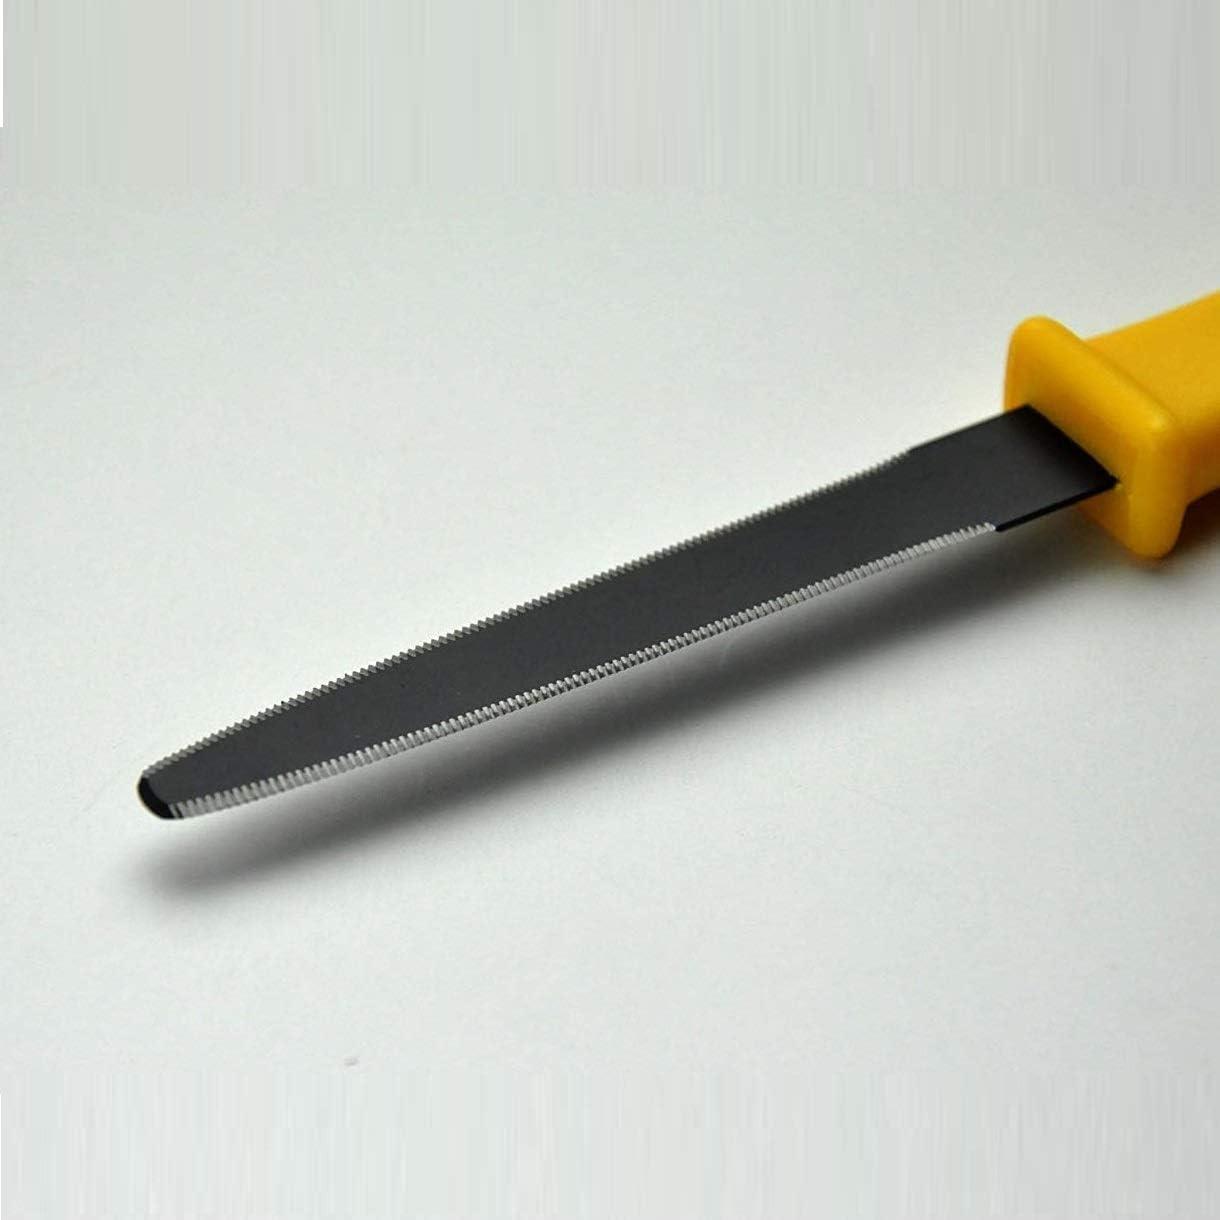  CANARY Box Cutter Retractable Blade, Mini Box Opener